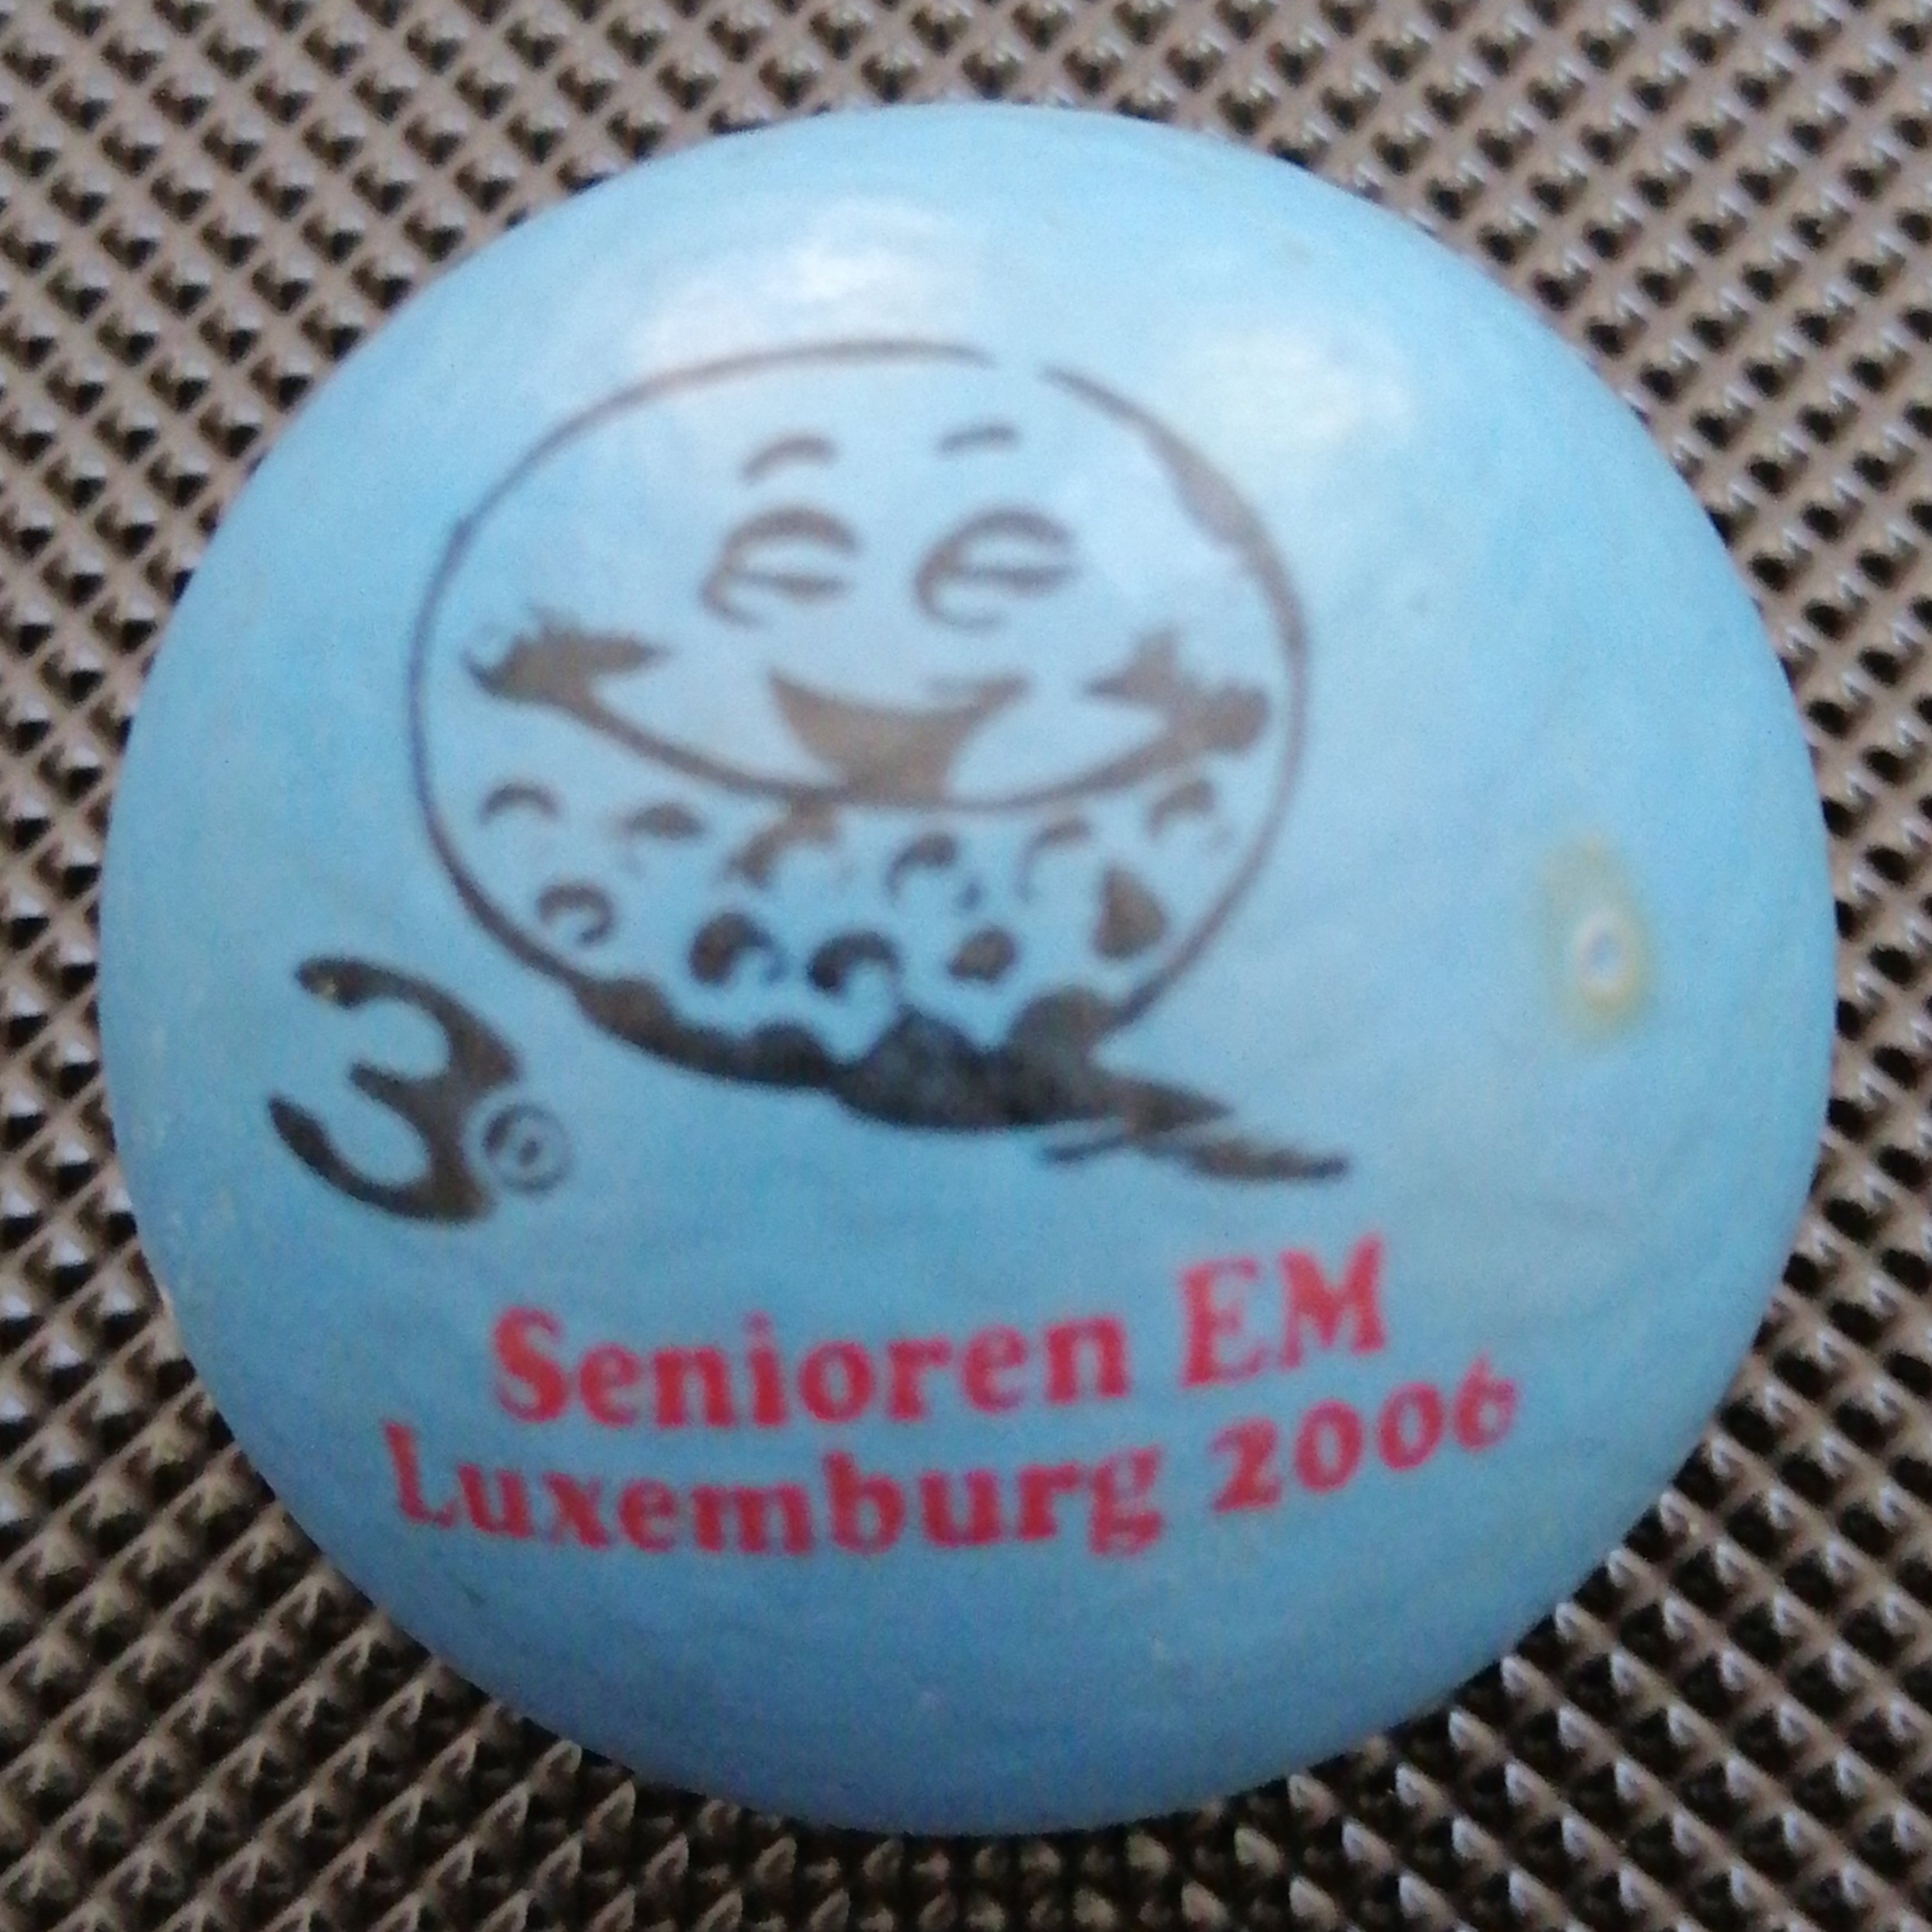 senioren_em_luxemburg_2006_3d.jpg